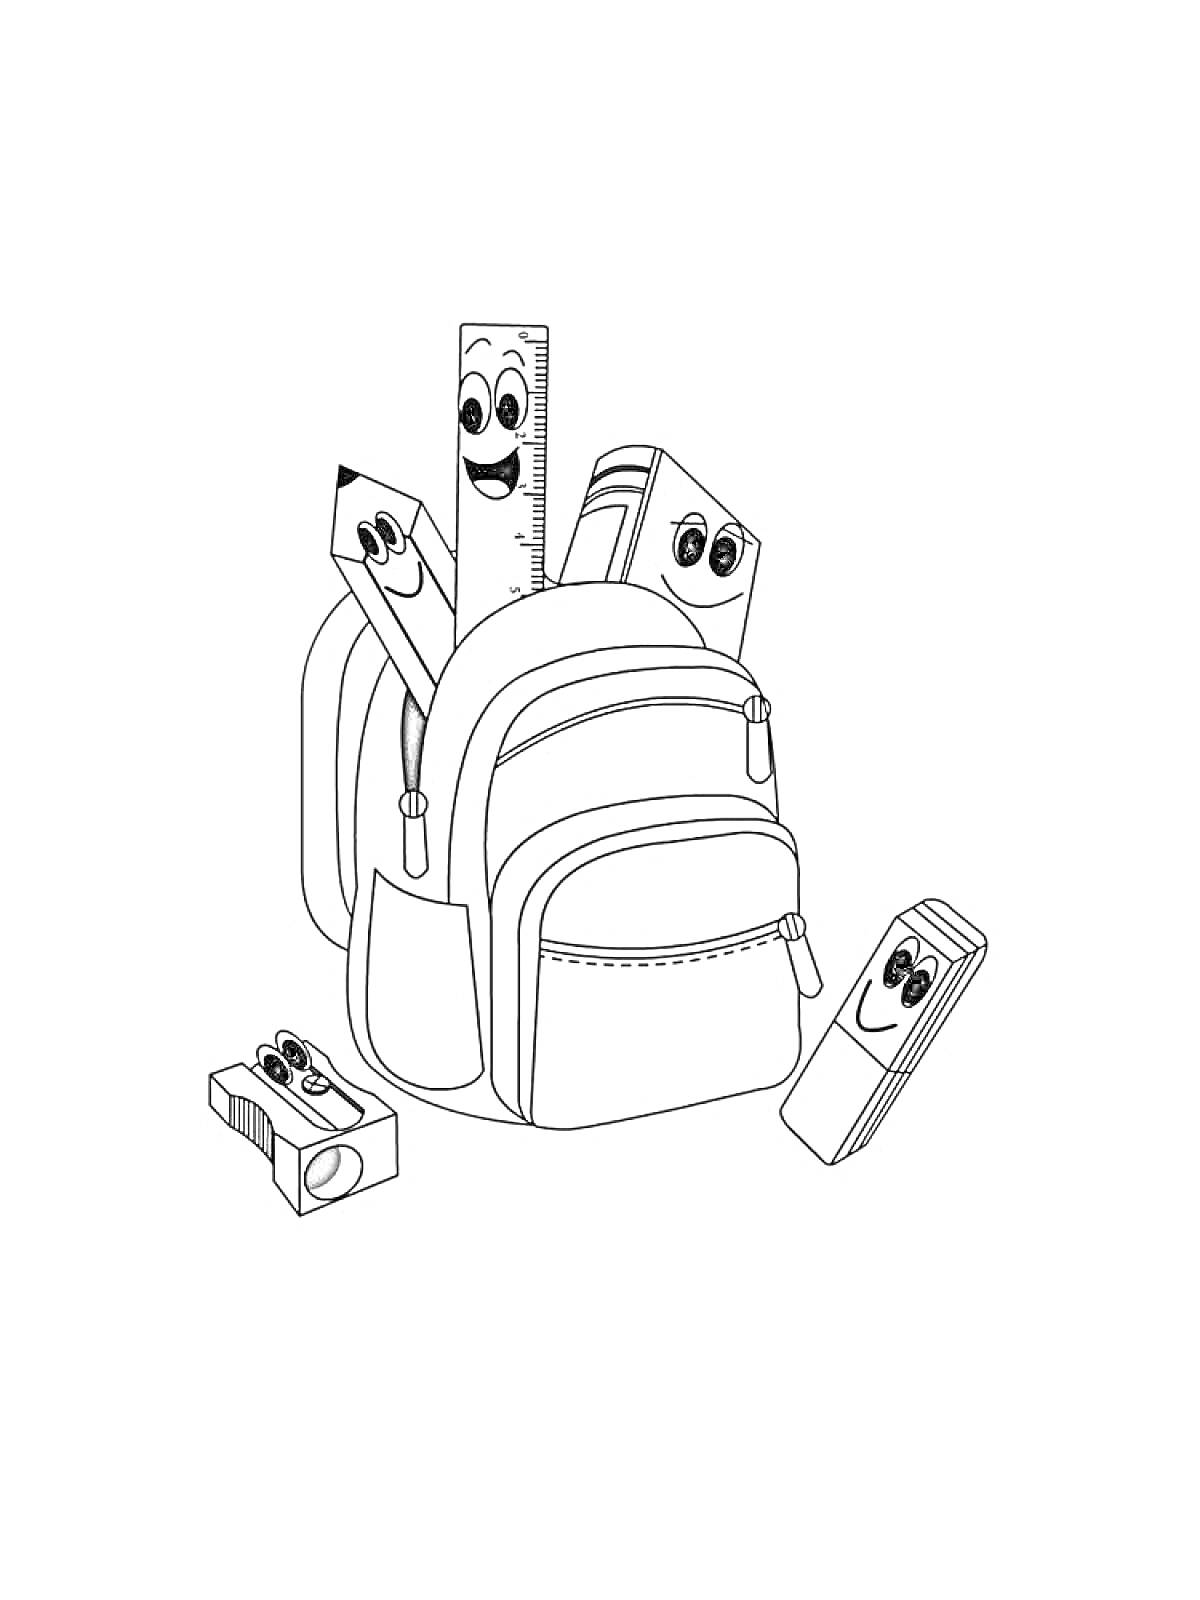 Портфель с линейкой, ластиком, карандашом, точилкой и книгой